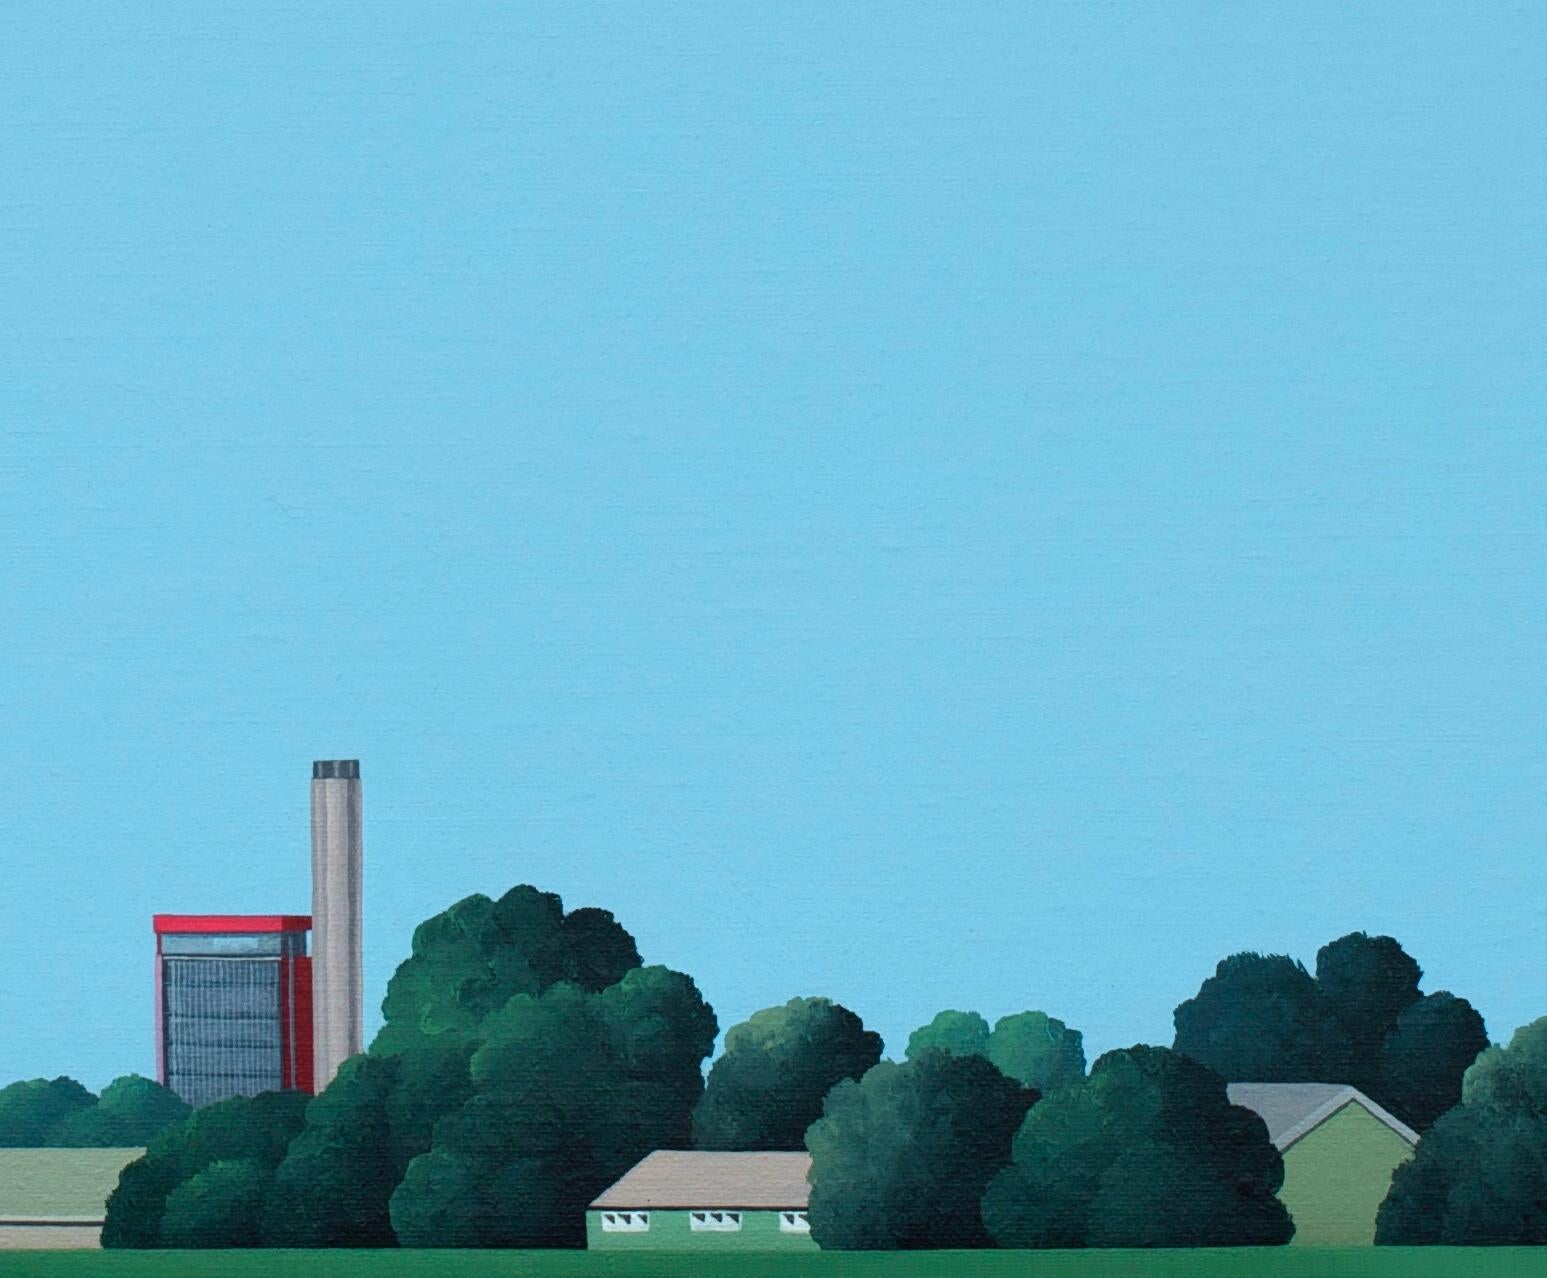 Cette magnifique peinture de paysage de Jeroen Allart fait partie de la peinture de paysage minimaliste qu'il a réalisée dans son pays, les Pays-Bas.
La ferme IA se dresse devant vous à l'horizon. Un moulin à vent tranche majestueusement le ciel